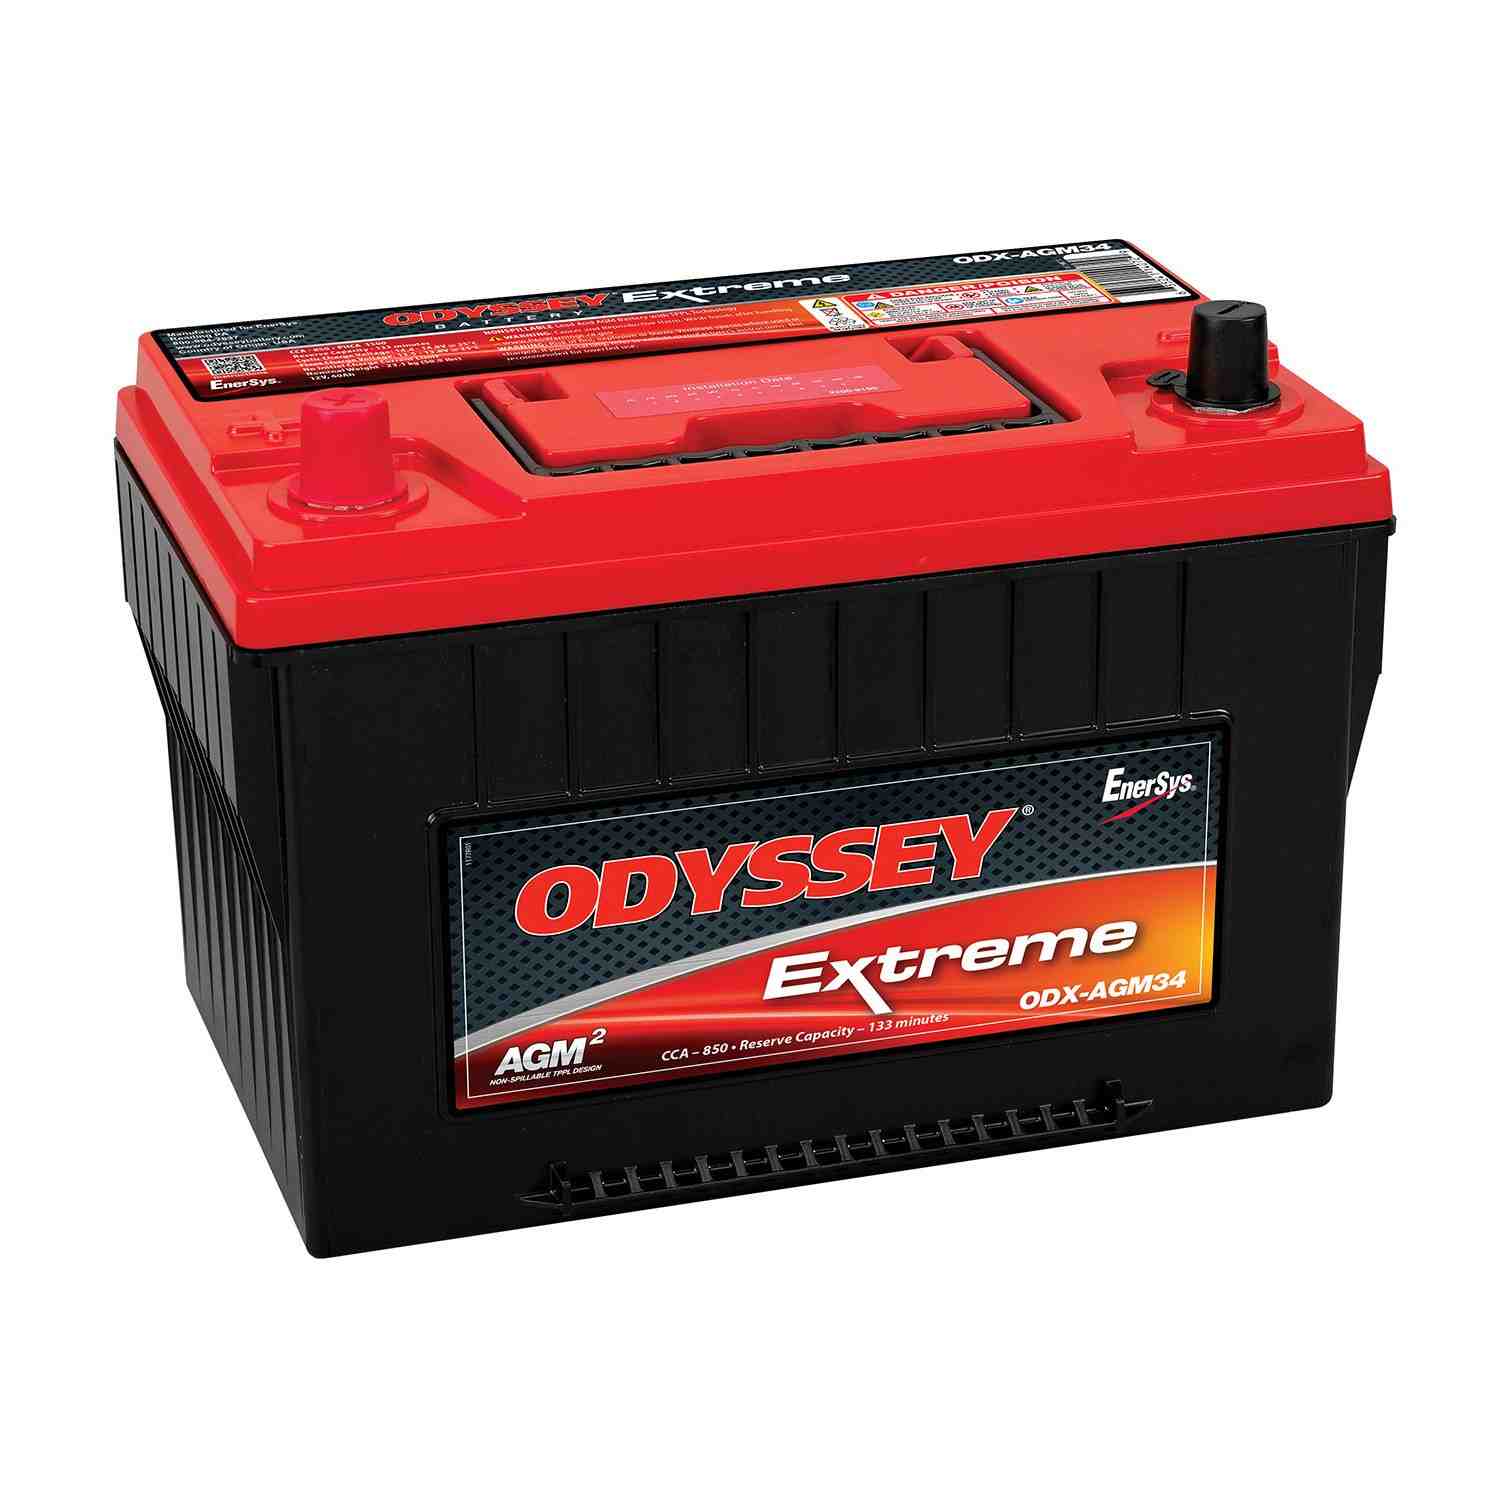 Odyssey Battery Vehicle Battery ODX-AGM34